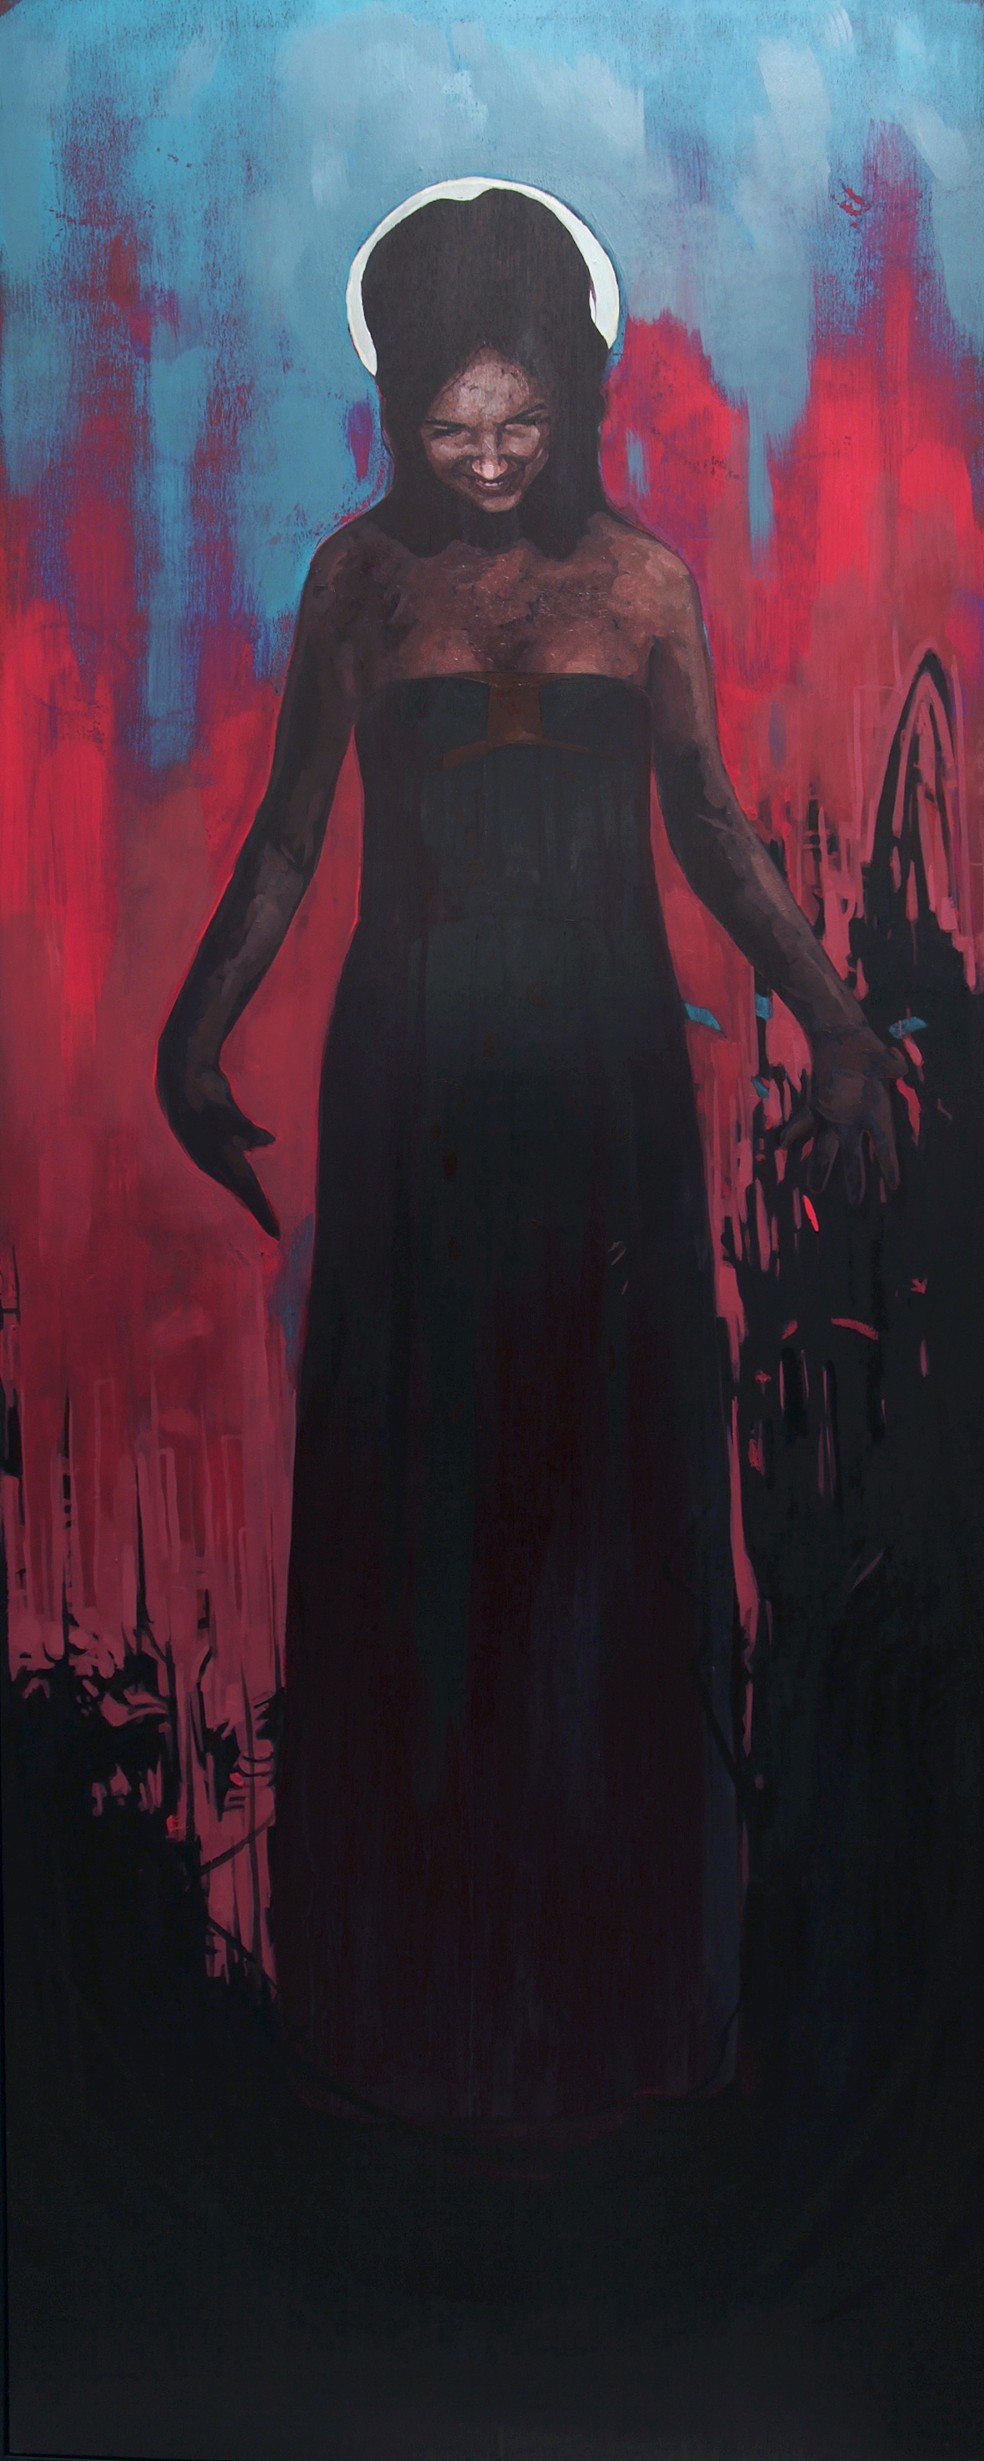 Tracey after Sydney, 2015. Абдул Абдулла (Abdul Abdullah) - современный американский художник. Современное искусство США